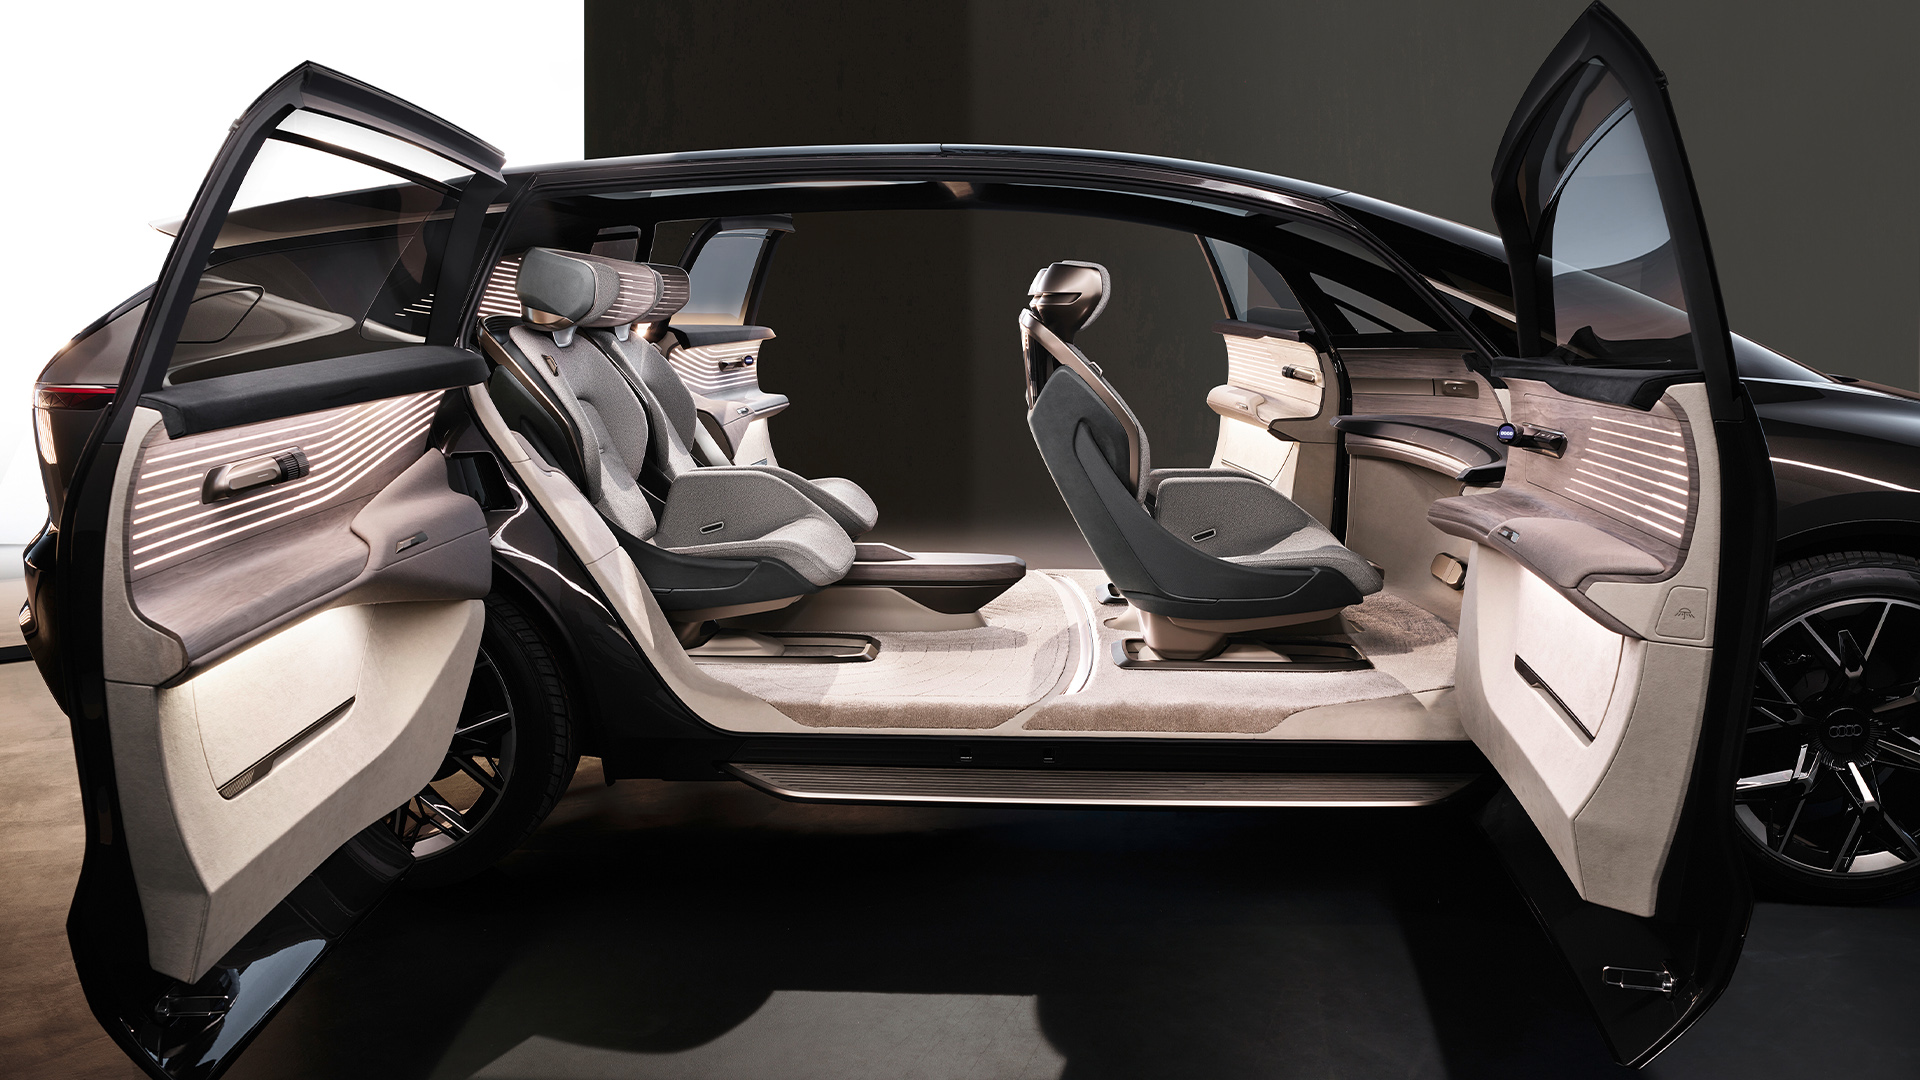 El Audi urbansphere vehículo concepto